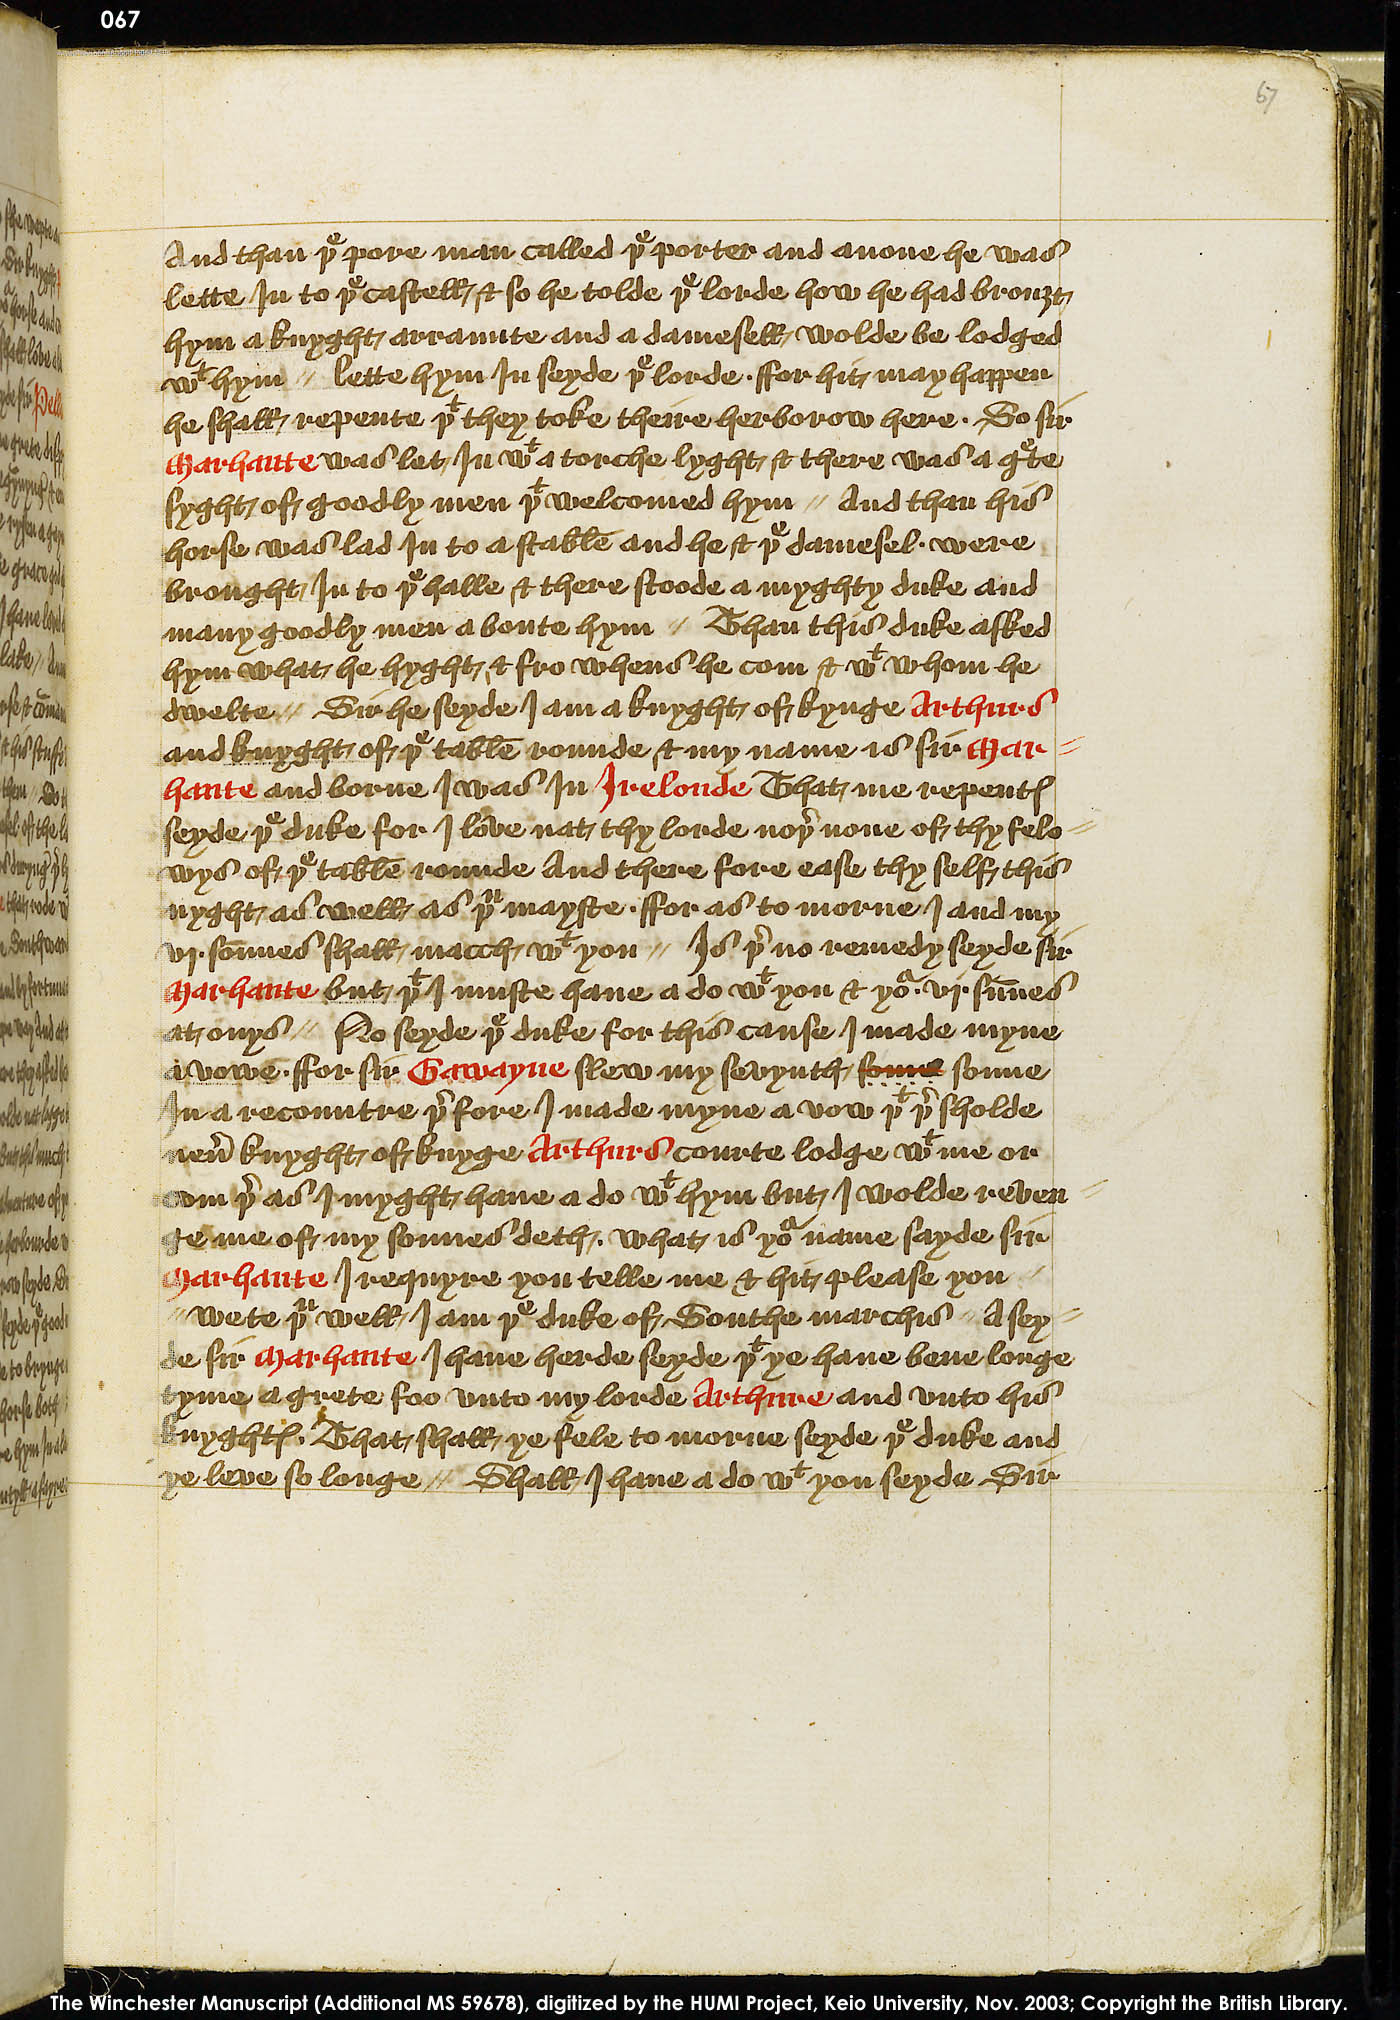 Folio 67r